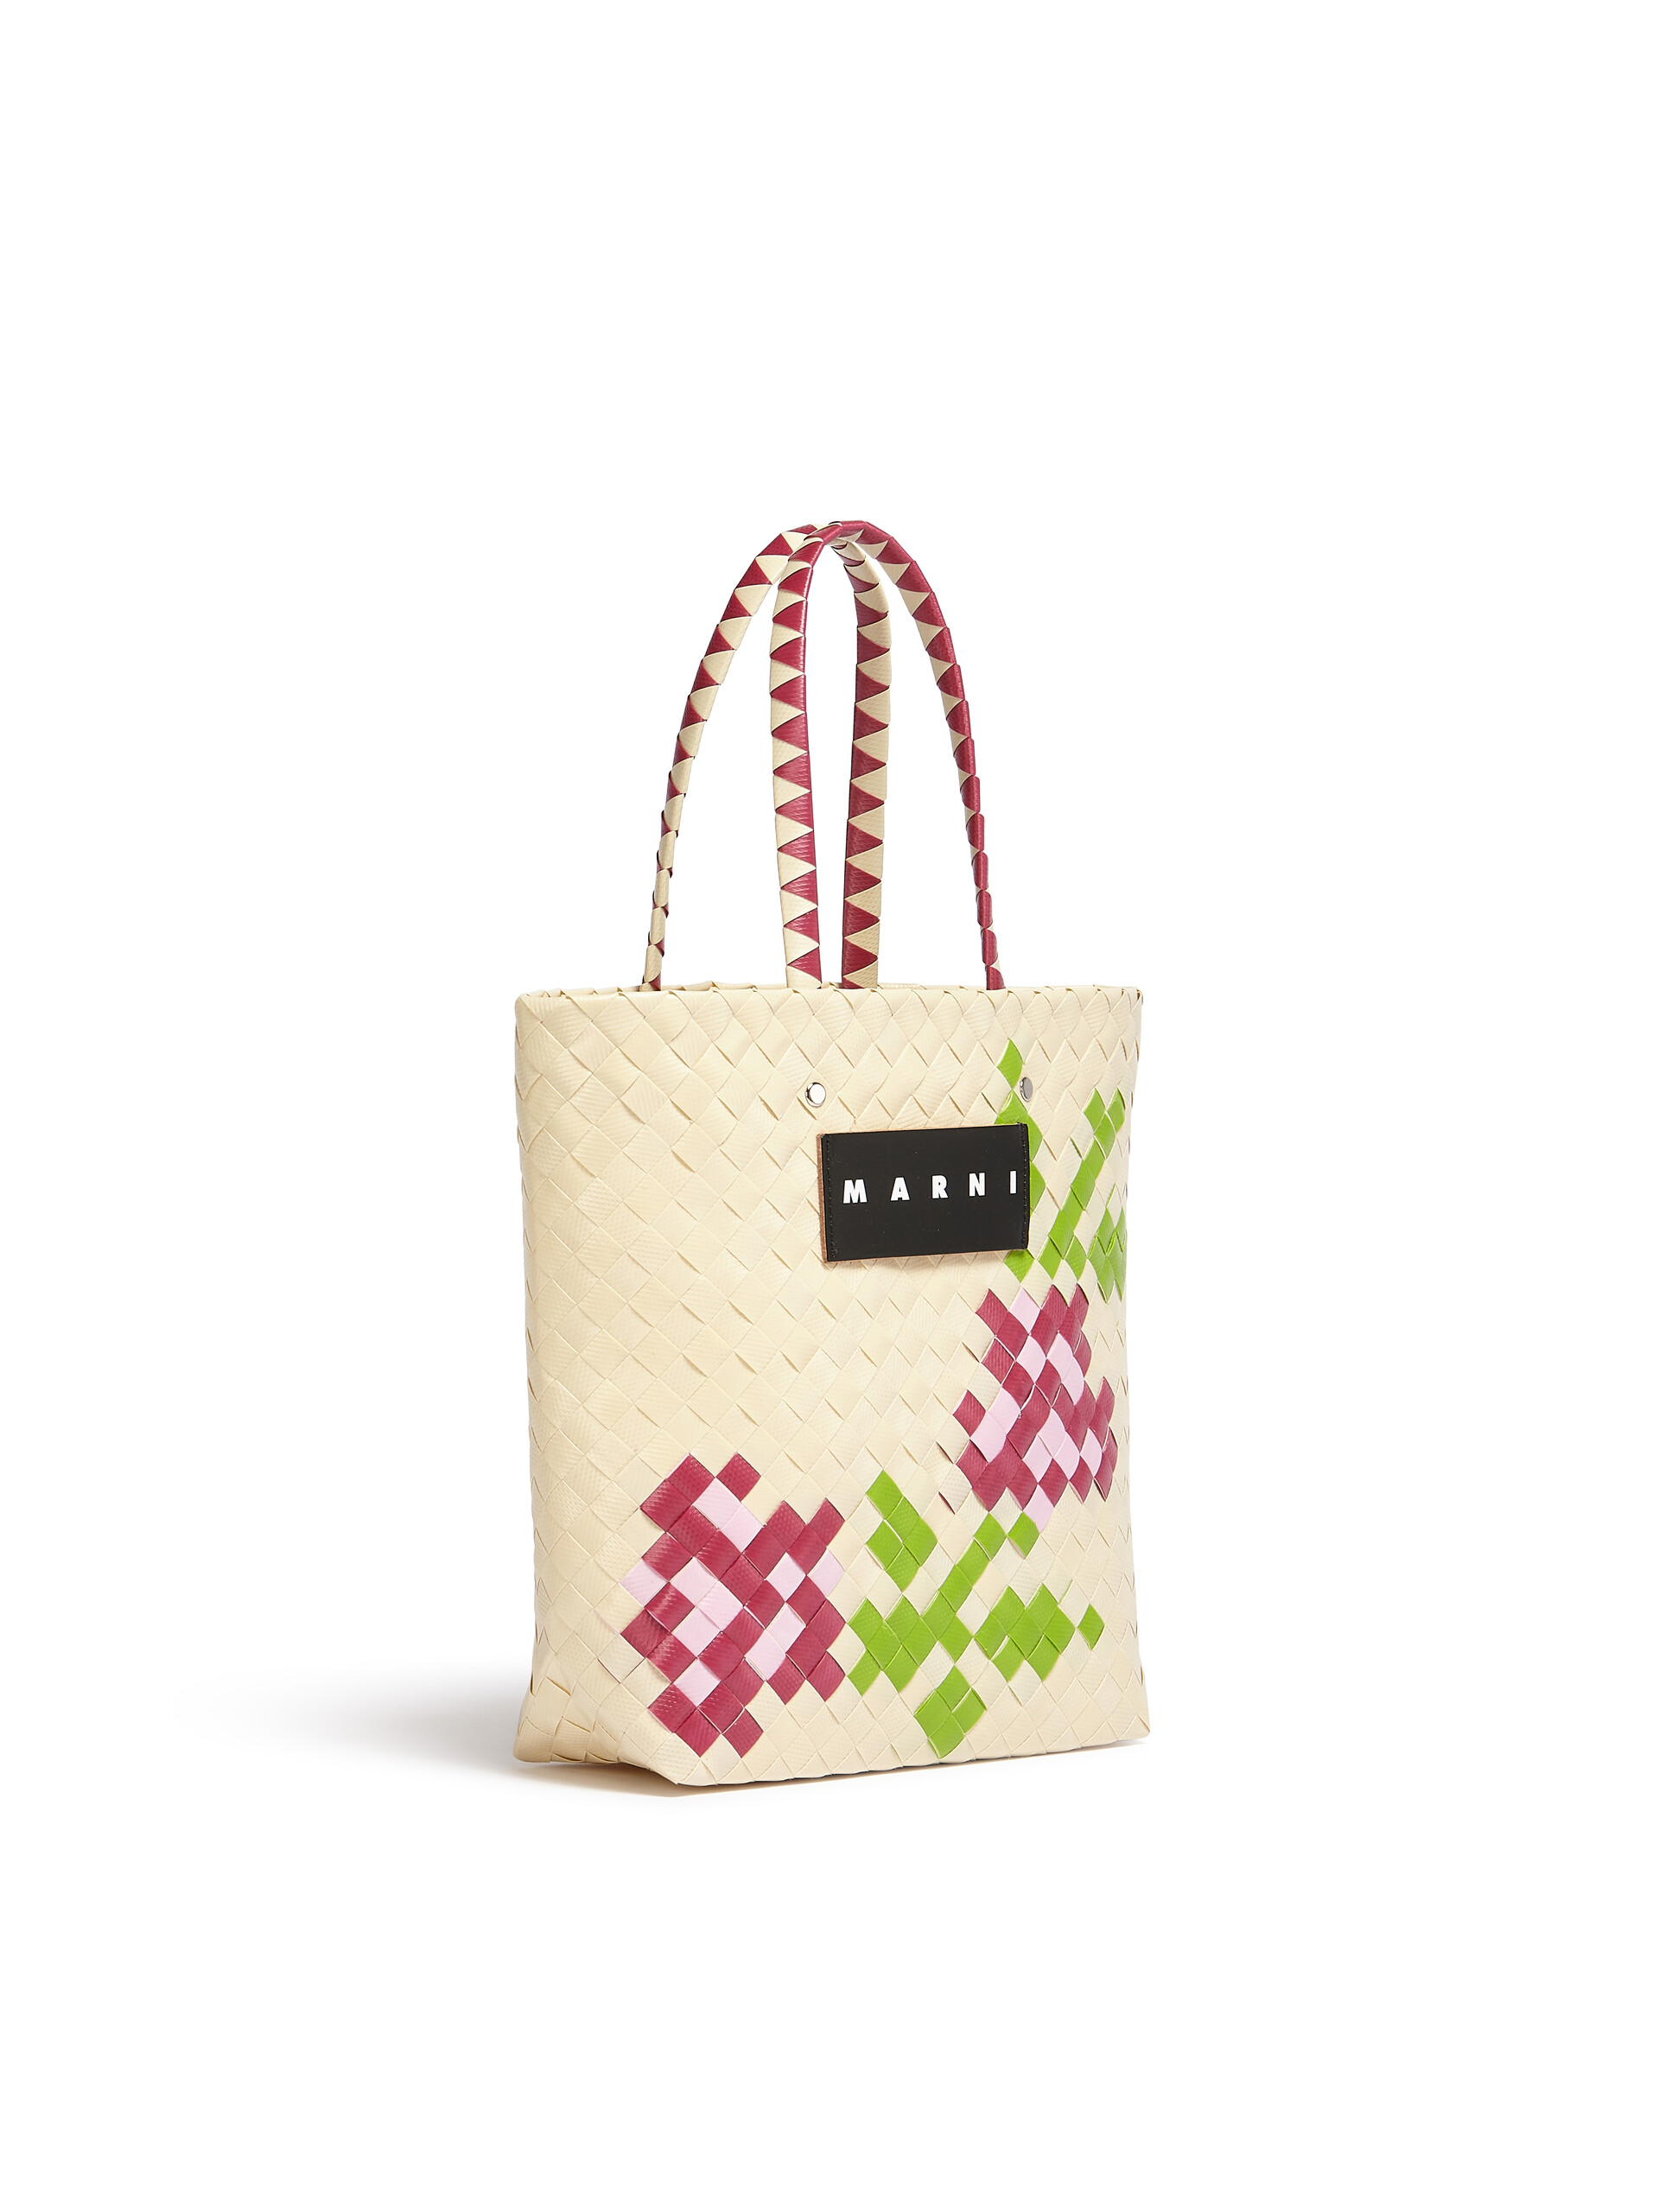 Kleine MARNI MARKET BORA Tasche mit grünem Blumenmotiv - Shopper - Image 2